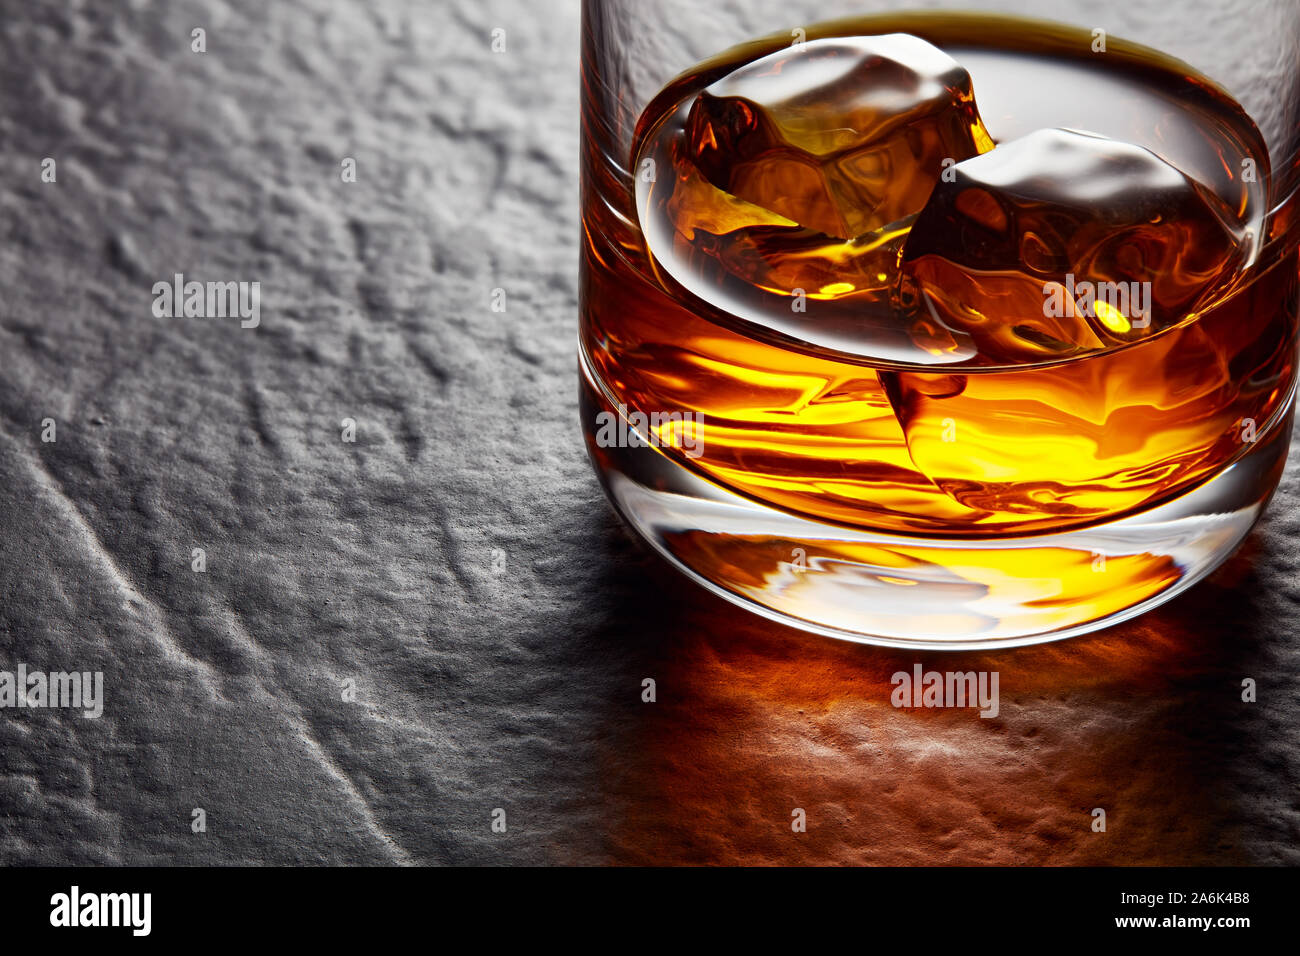 Elegante vaso de whisky con cubitos de hielo sobre la mesa de piedra negra. Moody Vista cercana Foto de stock